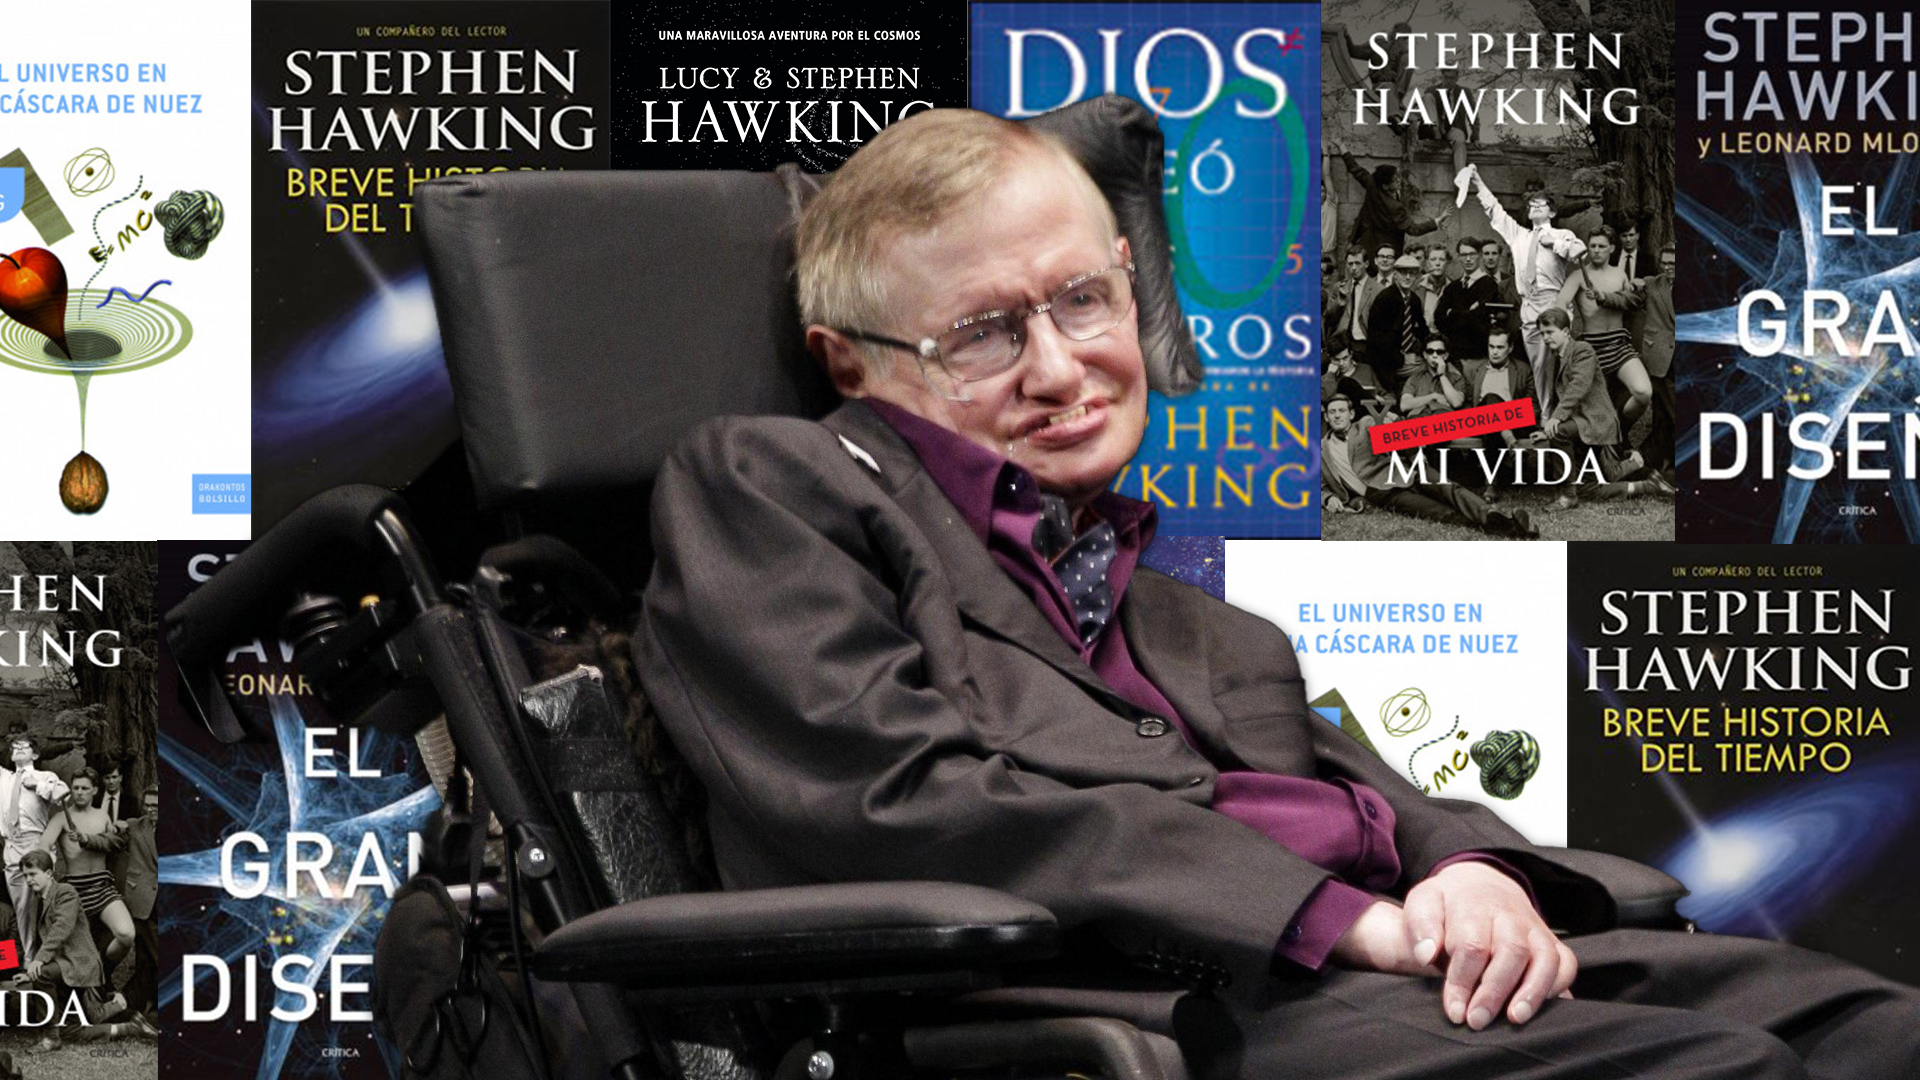 El científico Stephen Hawking cumpliría 80 años este 8 de enero